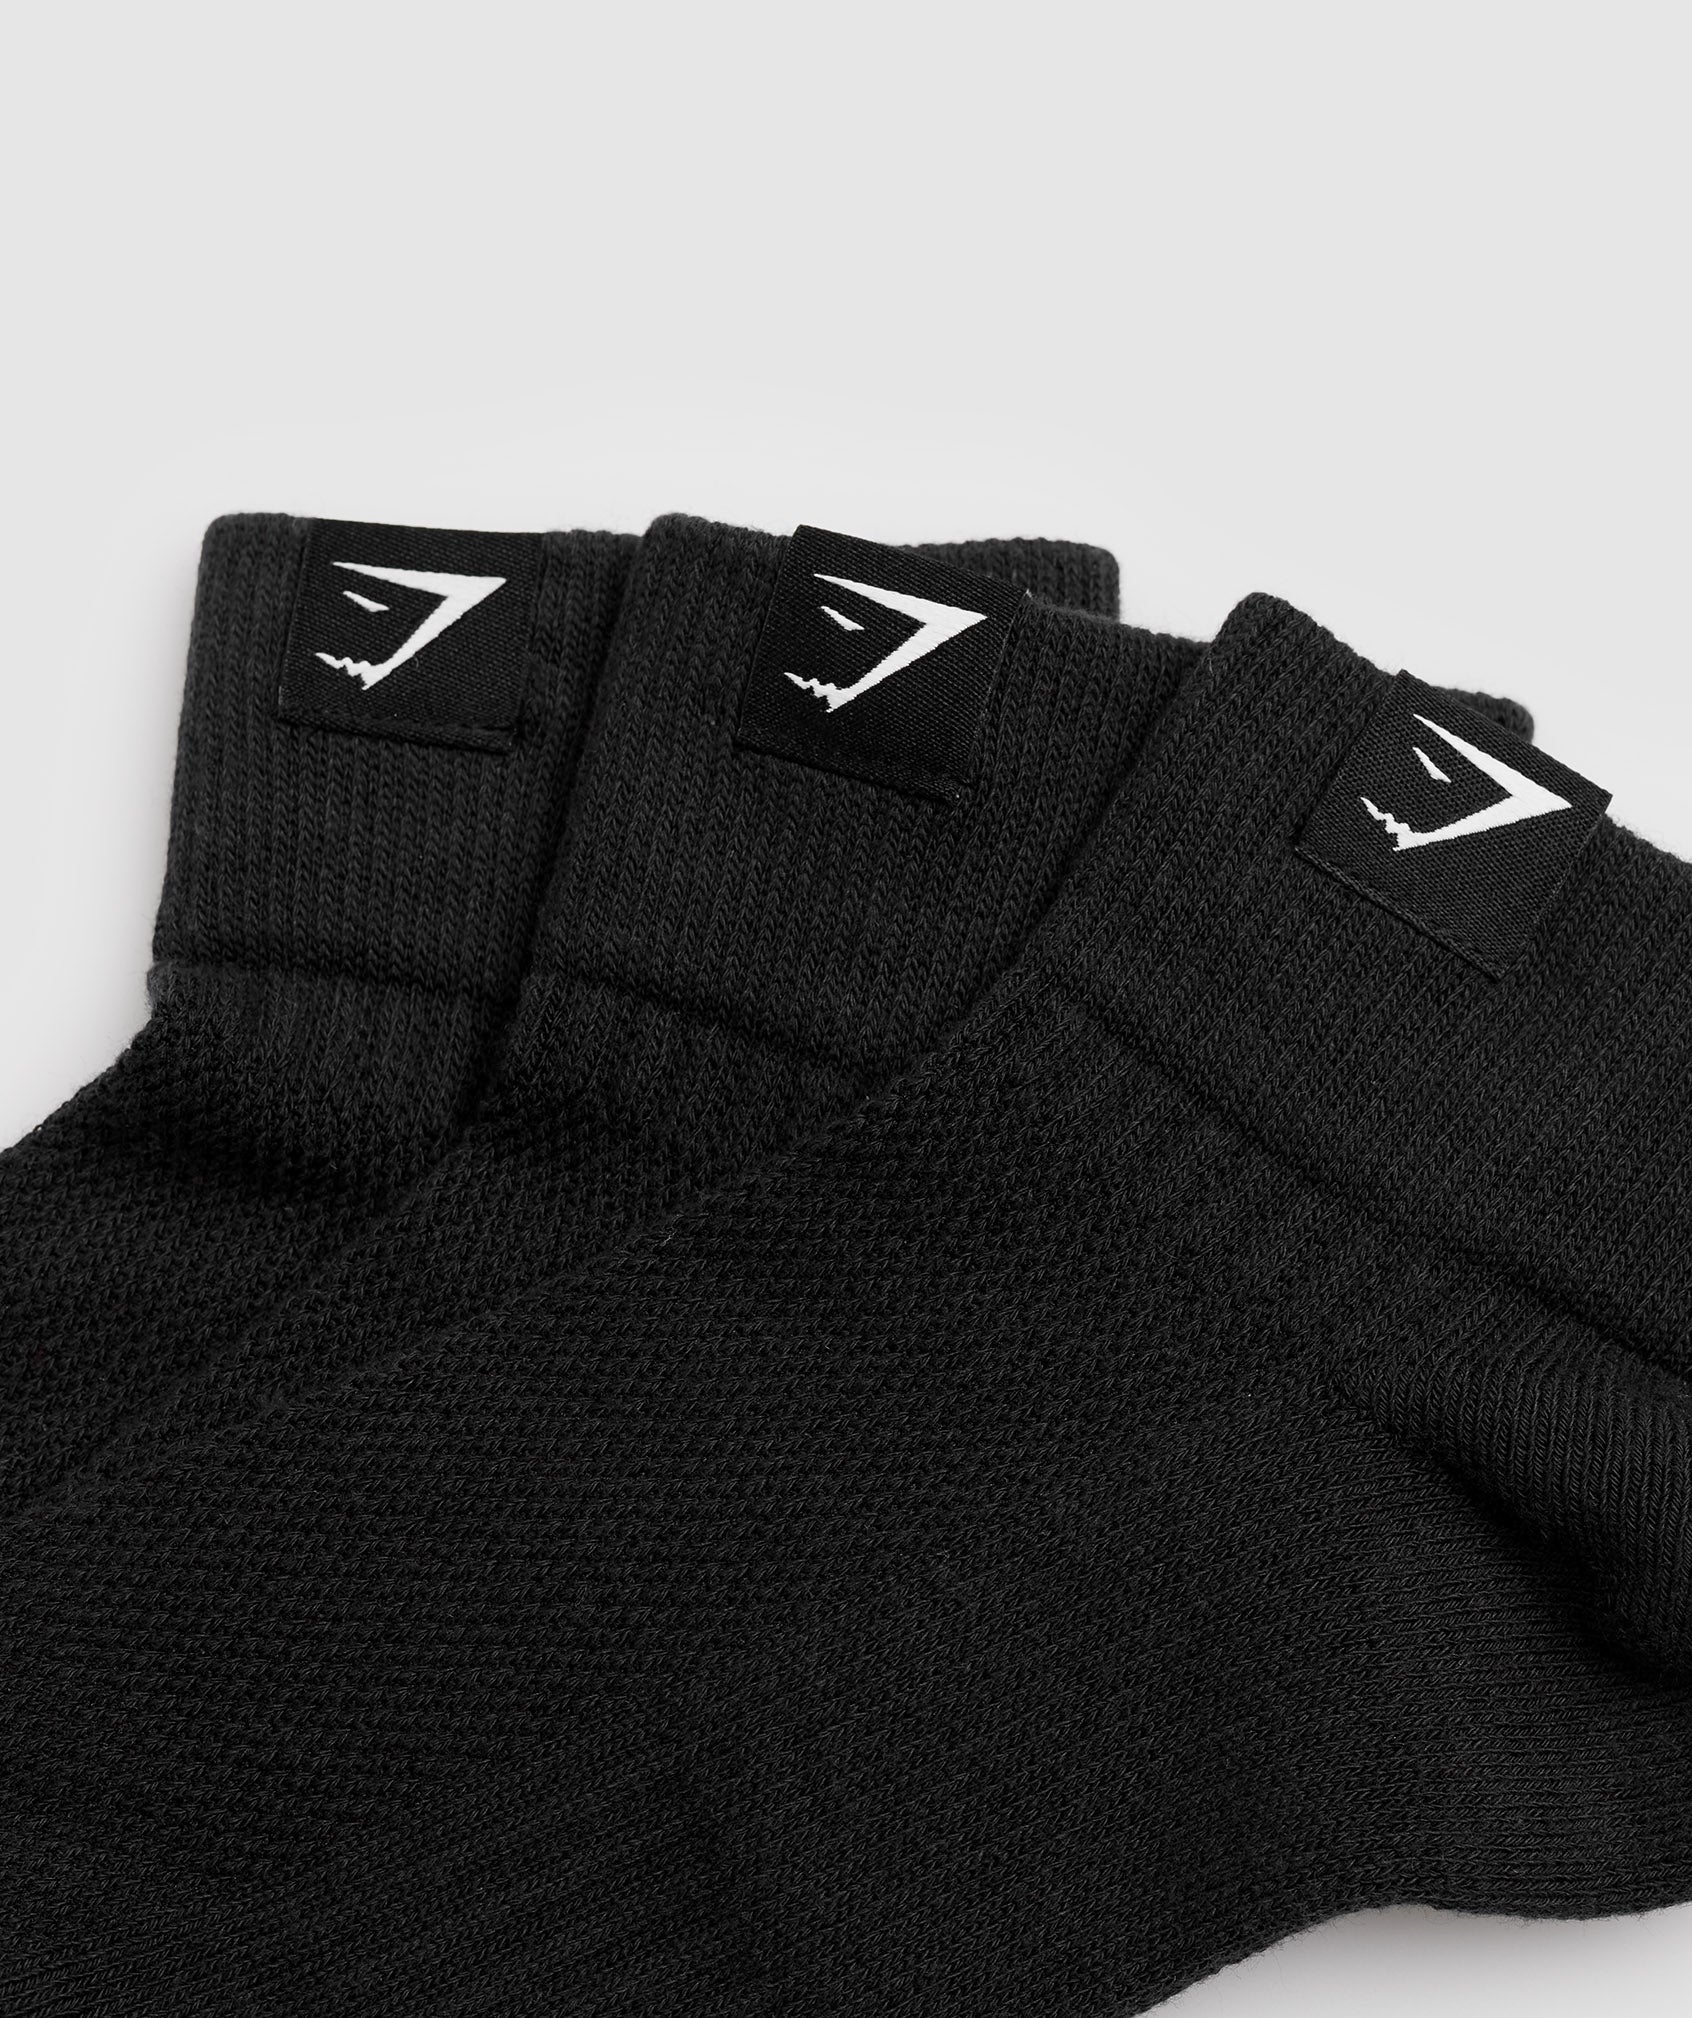 Gymshark Woven Tab Quarter Socks 3pk - Black